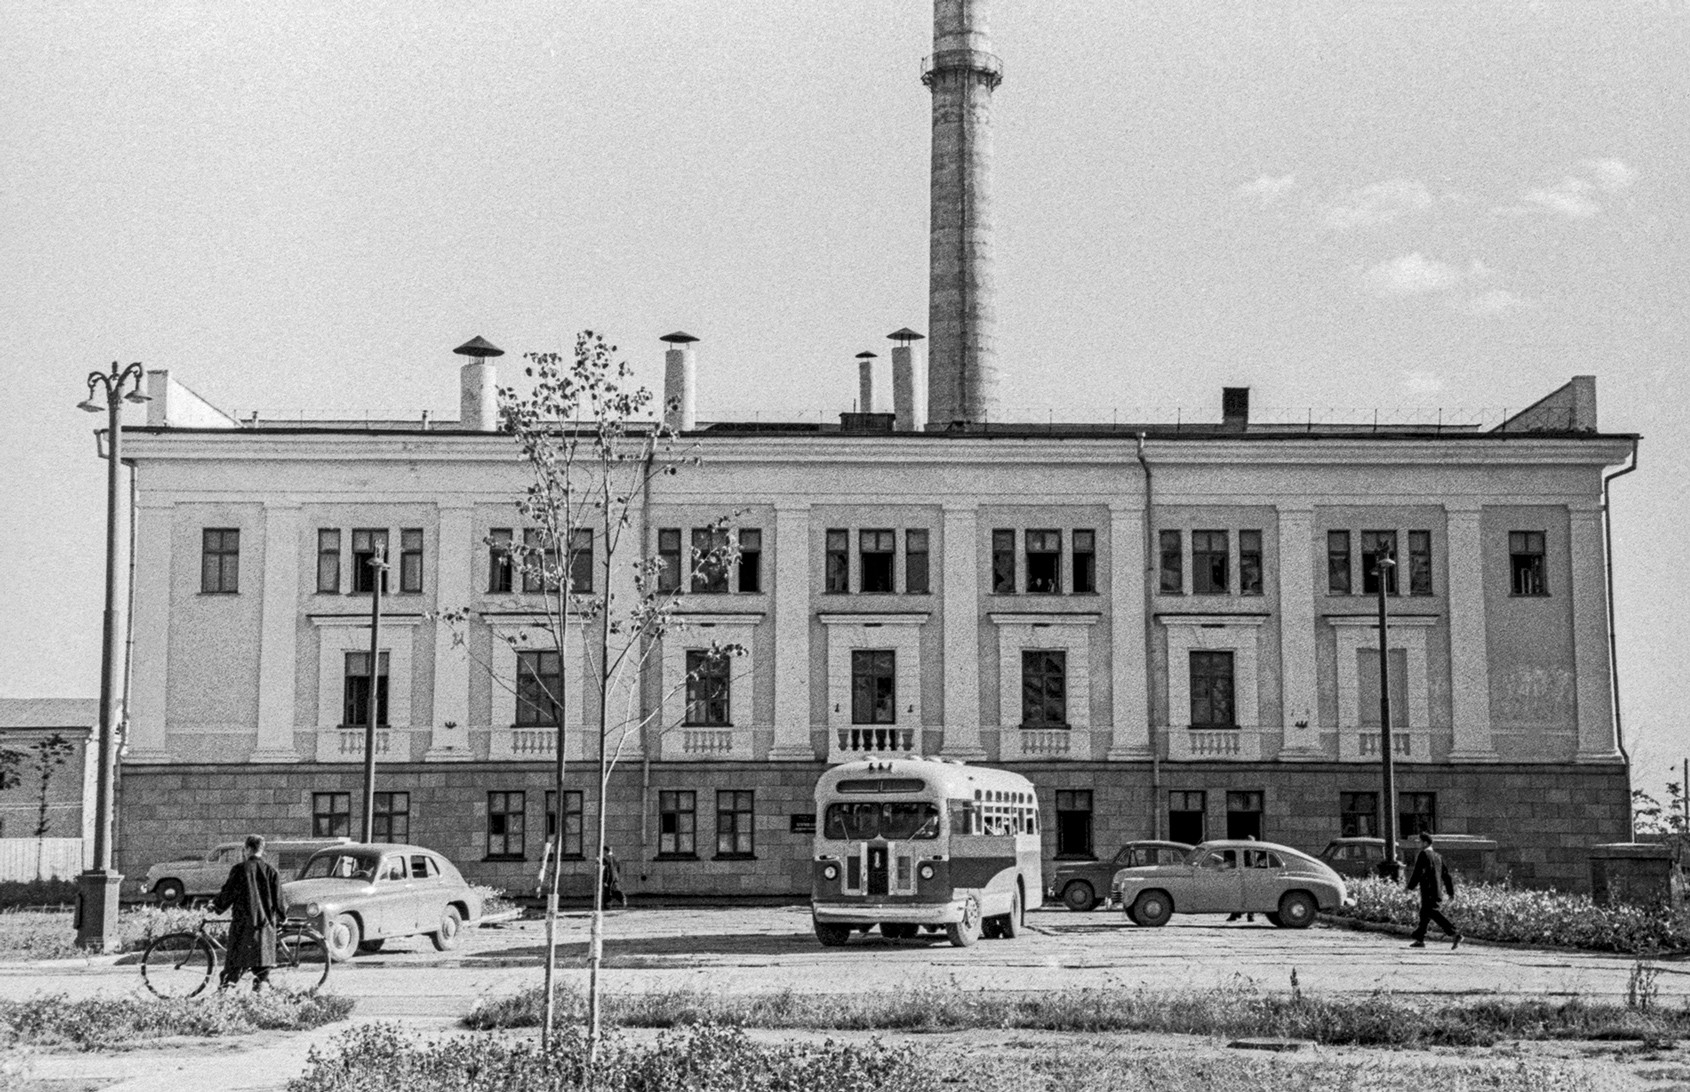 URSS. Région de Kalouga. Ville d’Obninsk. 10 août 1955. Édifice d’une centrale nucléaire.